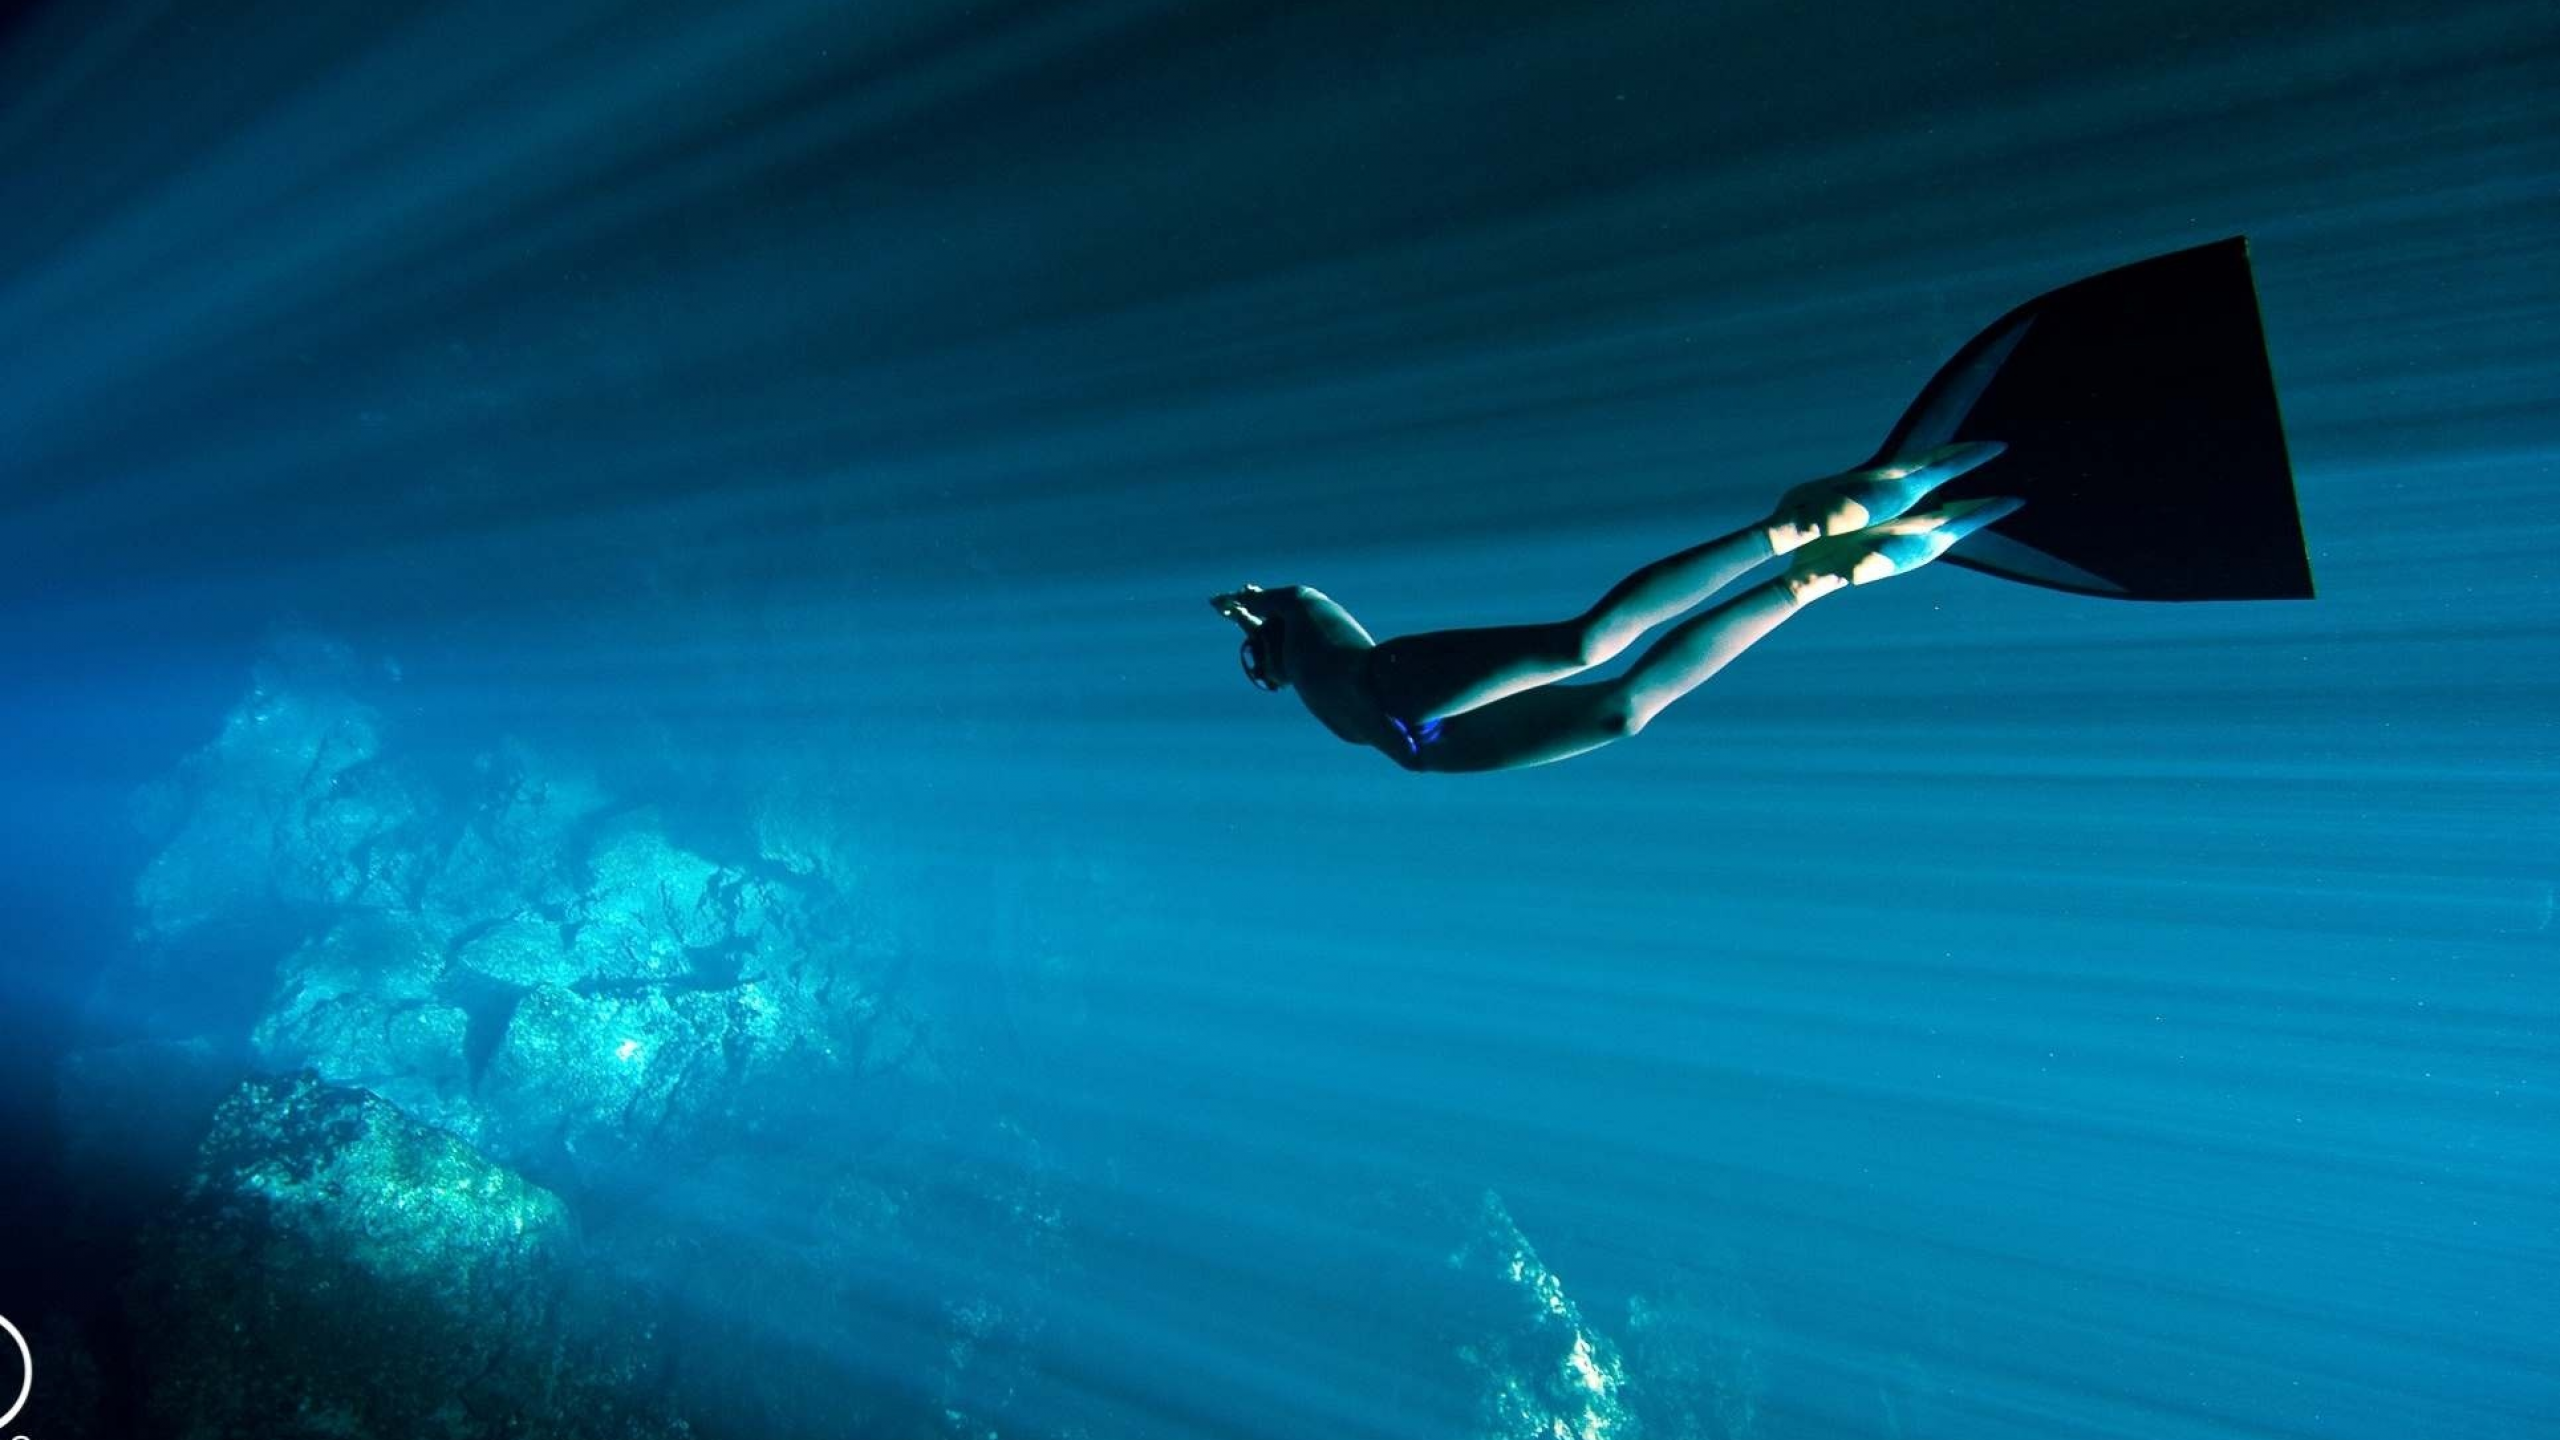 Download 2560x1440 freediving, photo, underwater, diving, ocean, diving suit Wallpaper